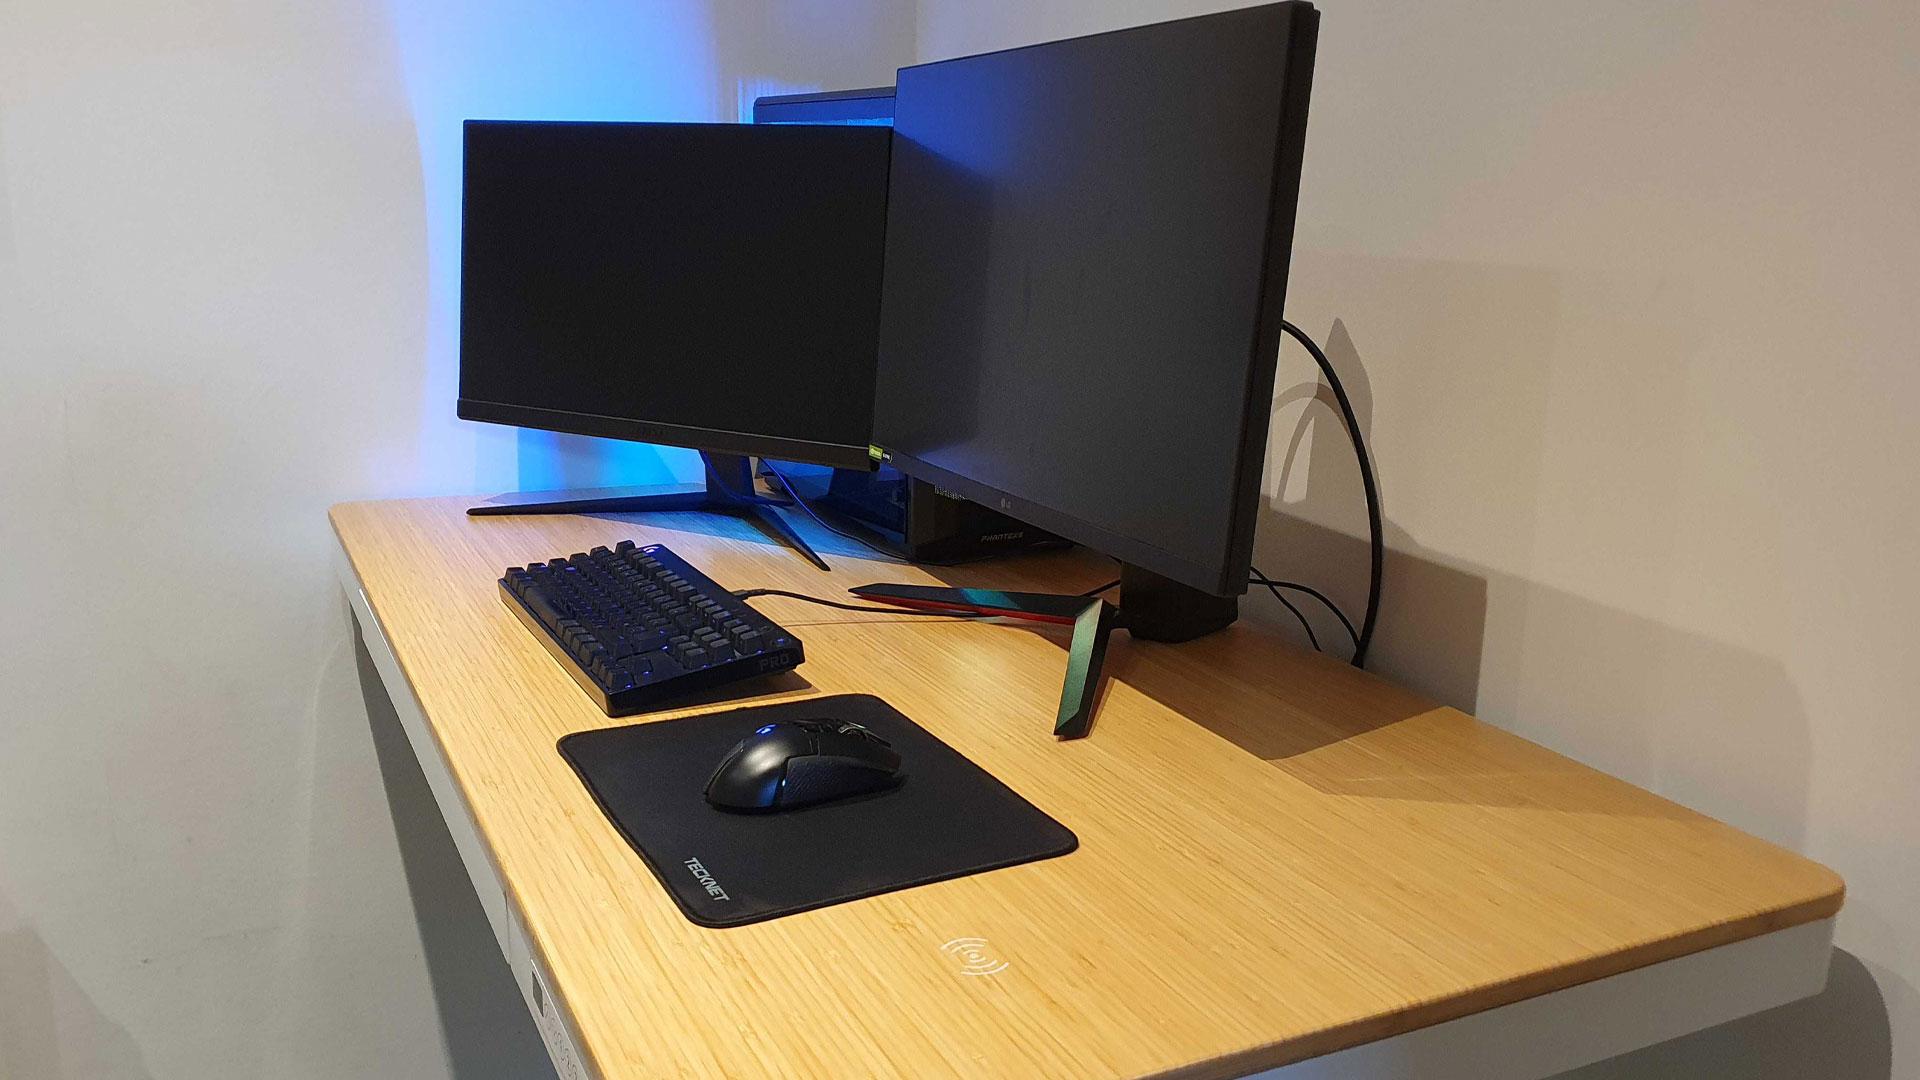 How big should a gaming desk be?